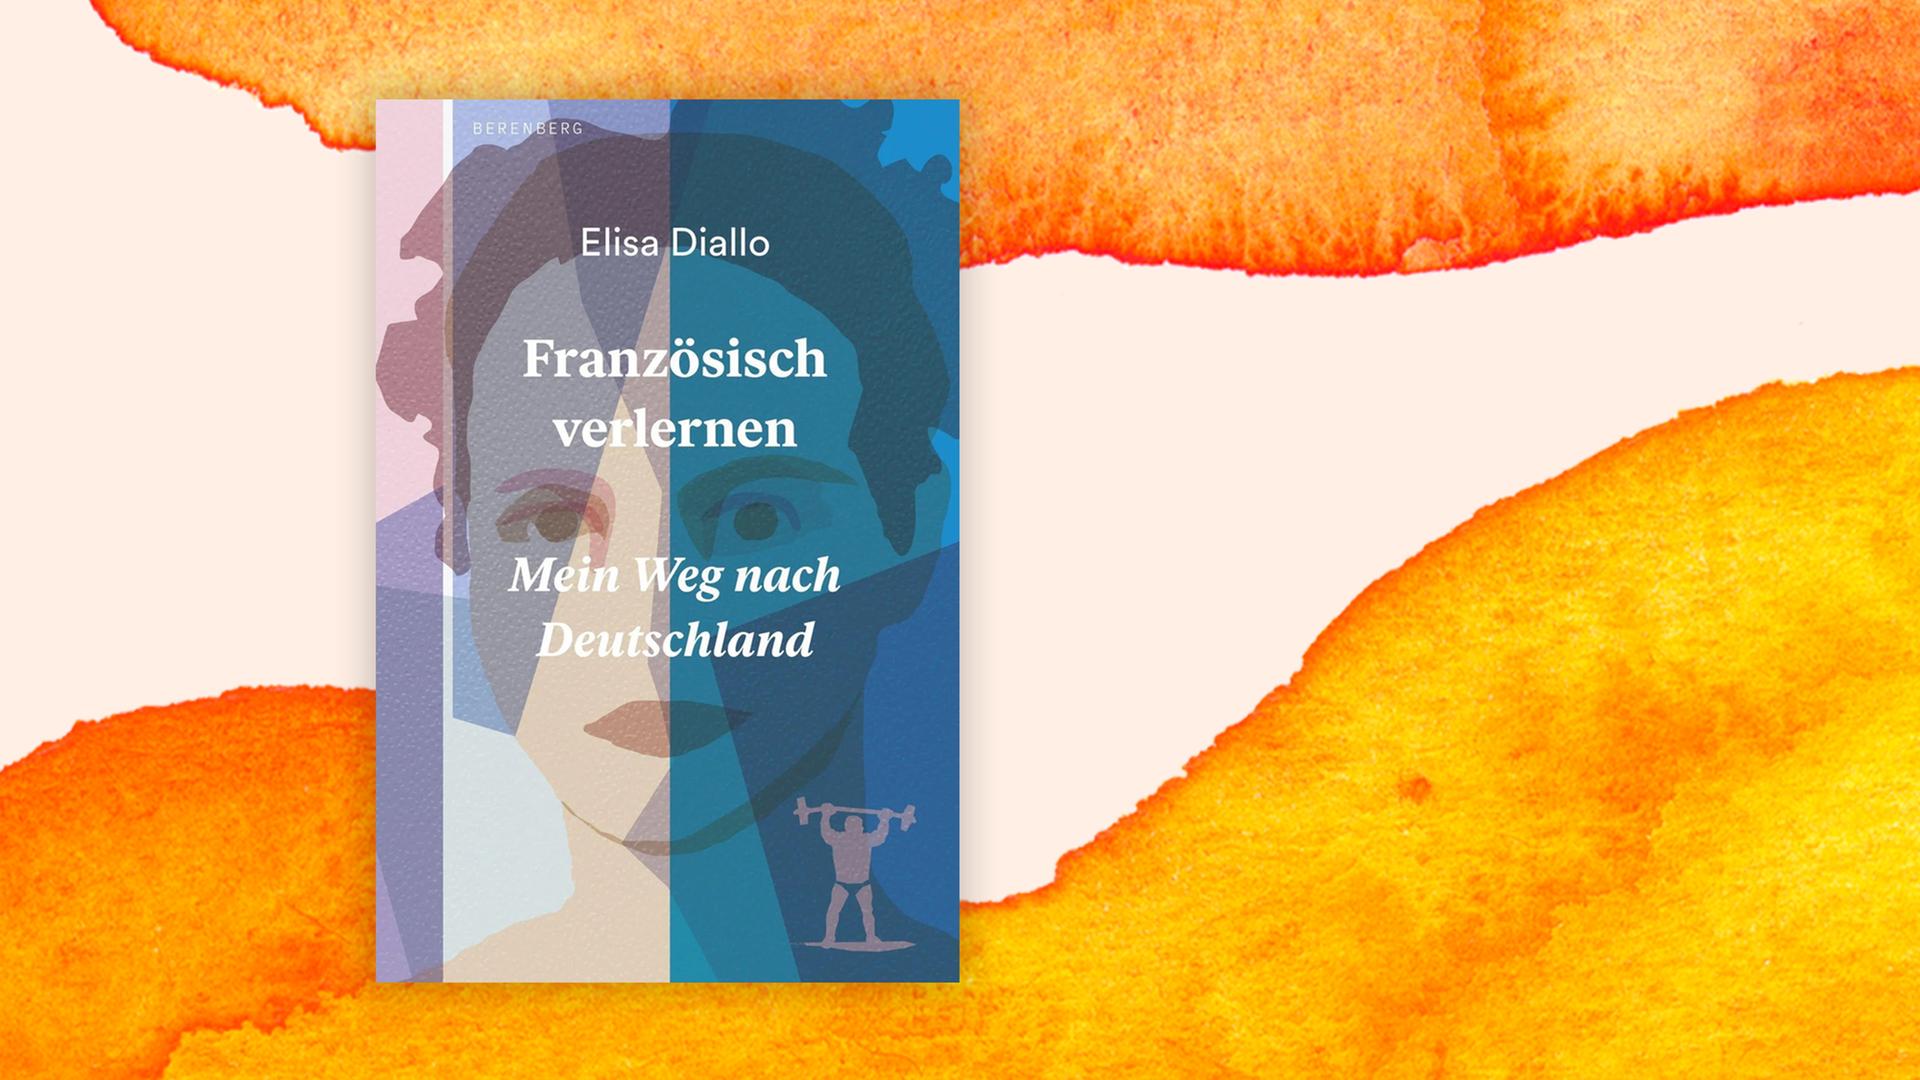 Buchcover: "Französisch verlernen" von Elisa Diallo